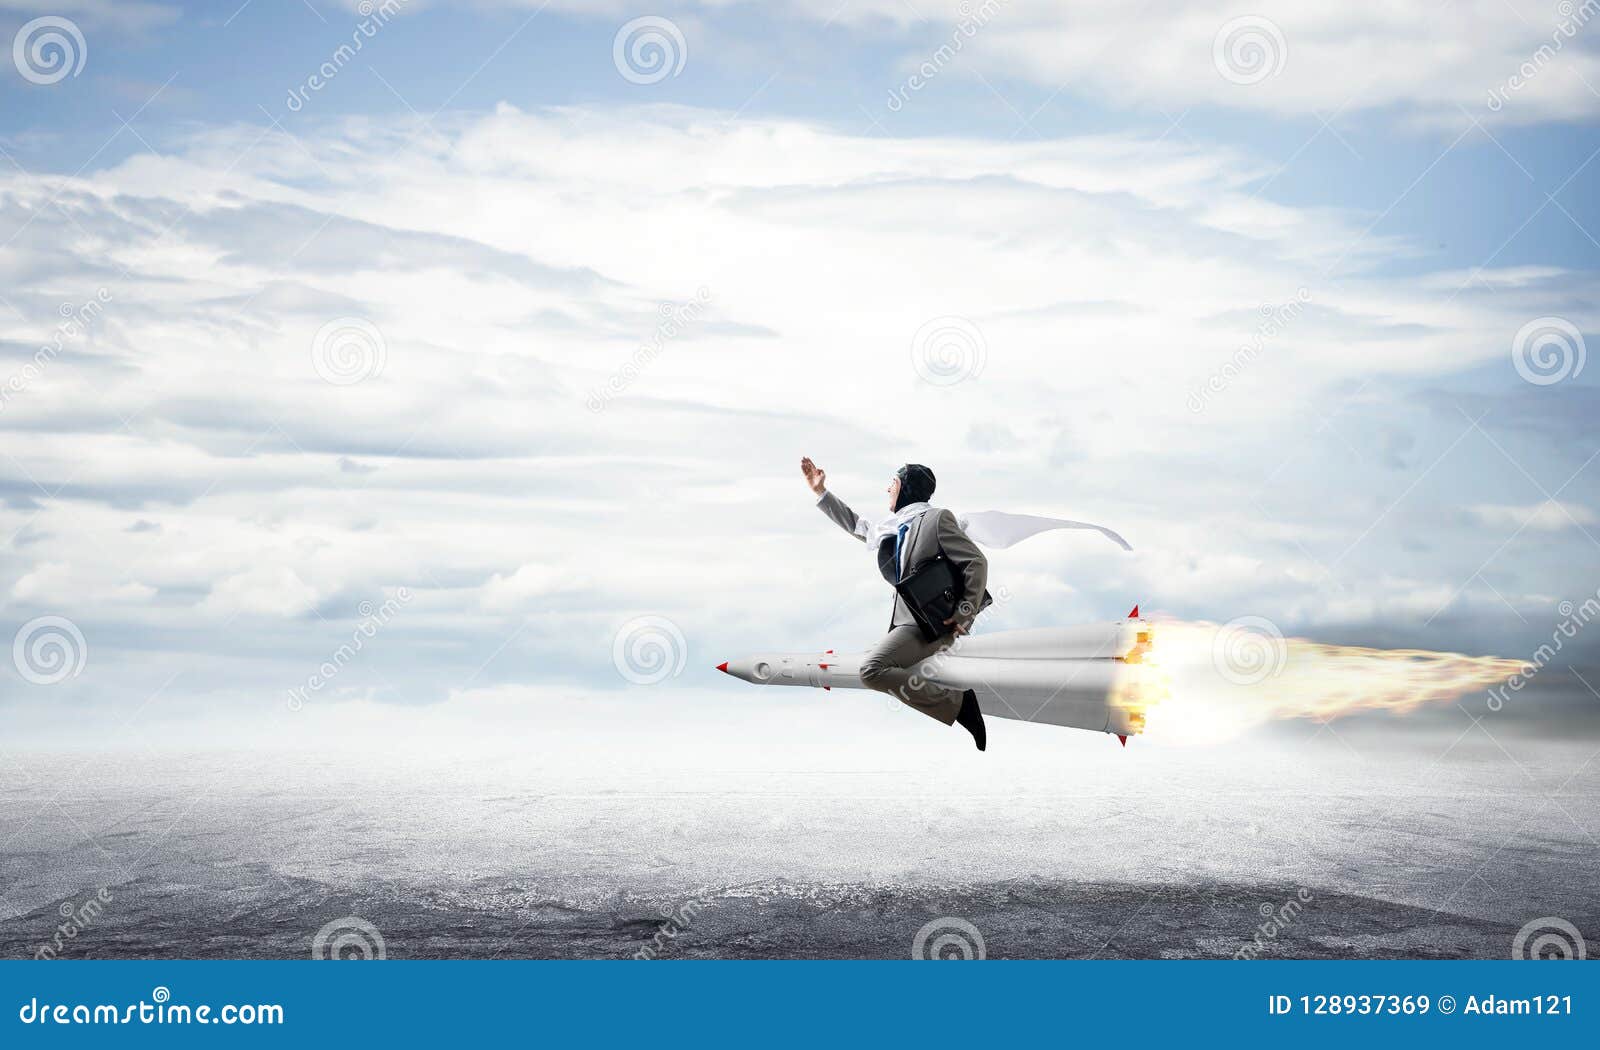 Affärsframgång och målprestationbegrepp. Begreppsmässig bild av den unga affärsmannen i dräktflyg på raket ovanför asfaltvägen med blå molnig himmel på bakgrund